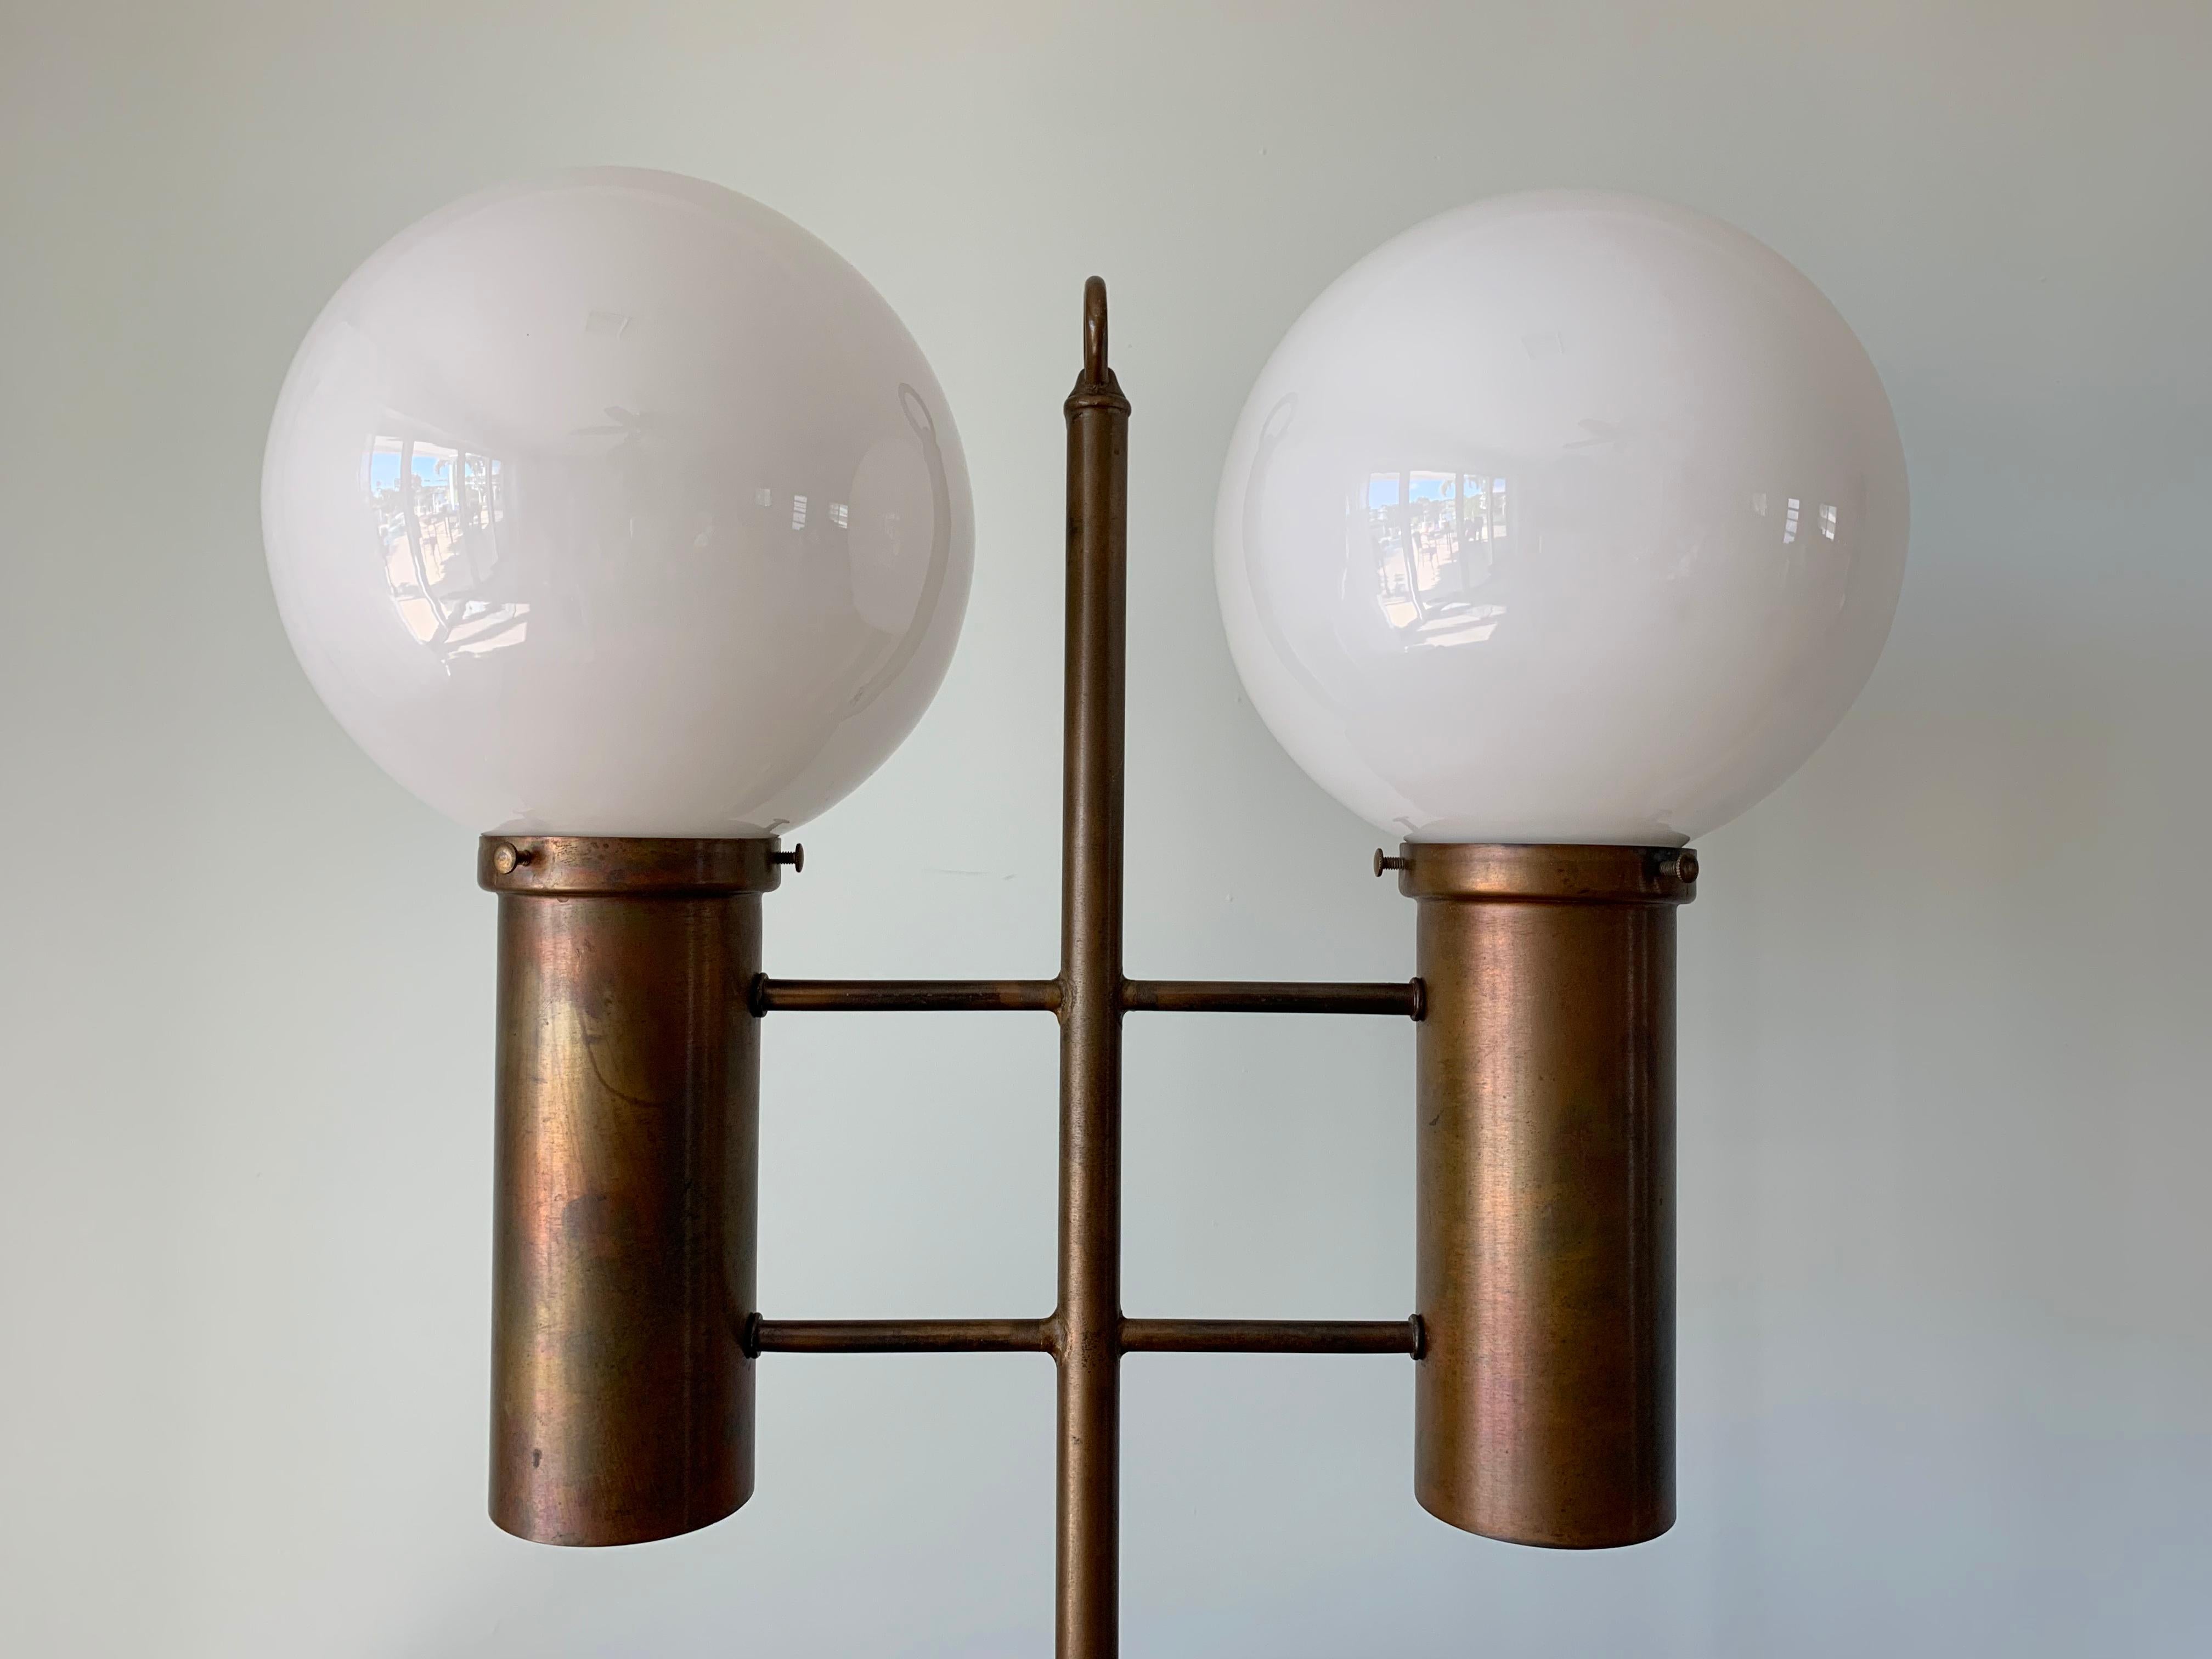 Große Tischleuchte von Robert Long.
Die Lampe ist aus massivem Messing und Opalglas gefertigt.
Sie verfügt über 2 Steckdosen für die Glaskugeln, 2 Steckdosen für die Unterseite der Messingzylinder (Umgebungslicht) und einen 3-Wege-Schalter (oben,